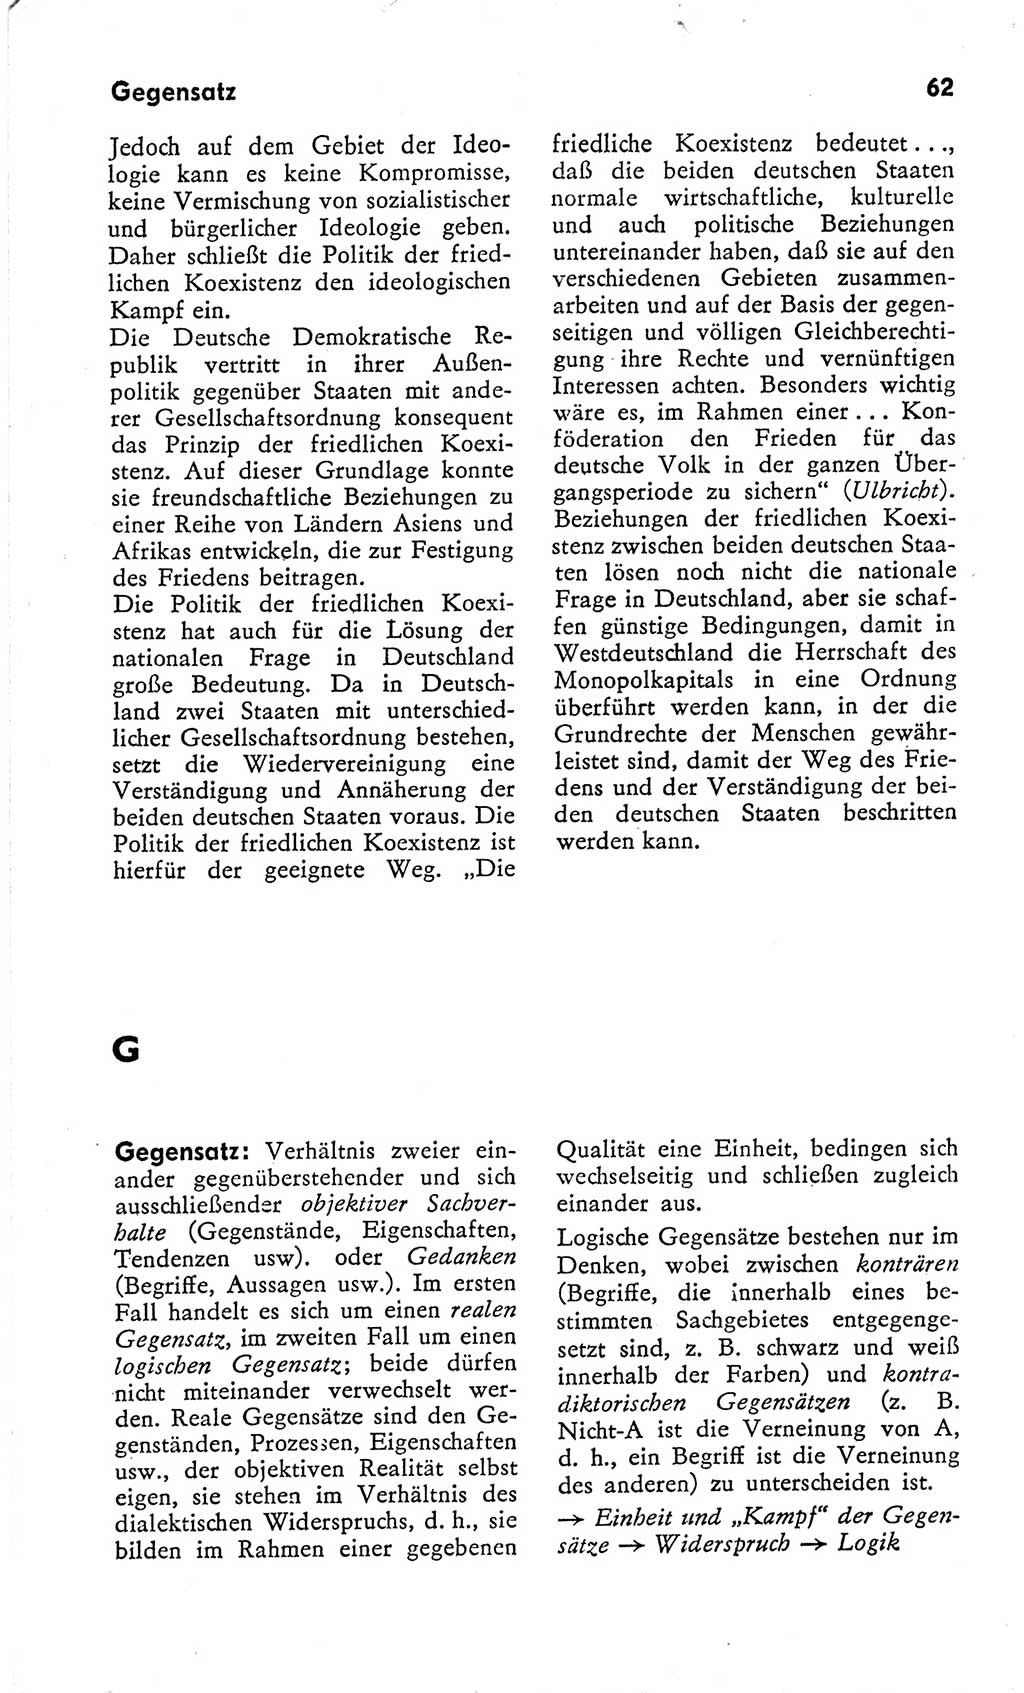 Kleines Wörterbuch der marxistisch-leninistischen Philosophie [Deutsche Demokratische Republik (DDR)] 1966, Seite 62 (Kl. Wb. ML Phil. DDR 1966, S. 62)